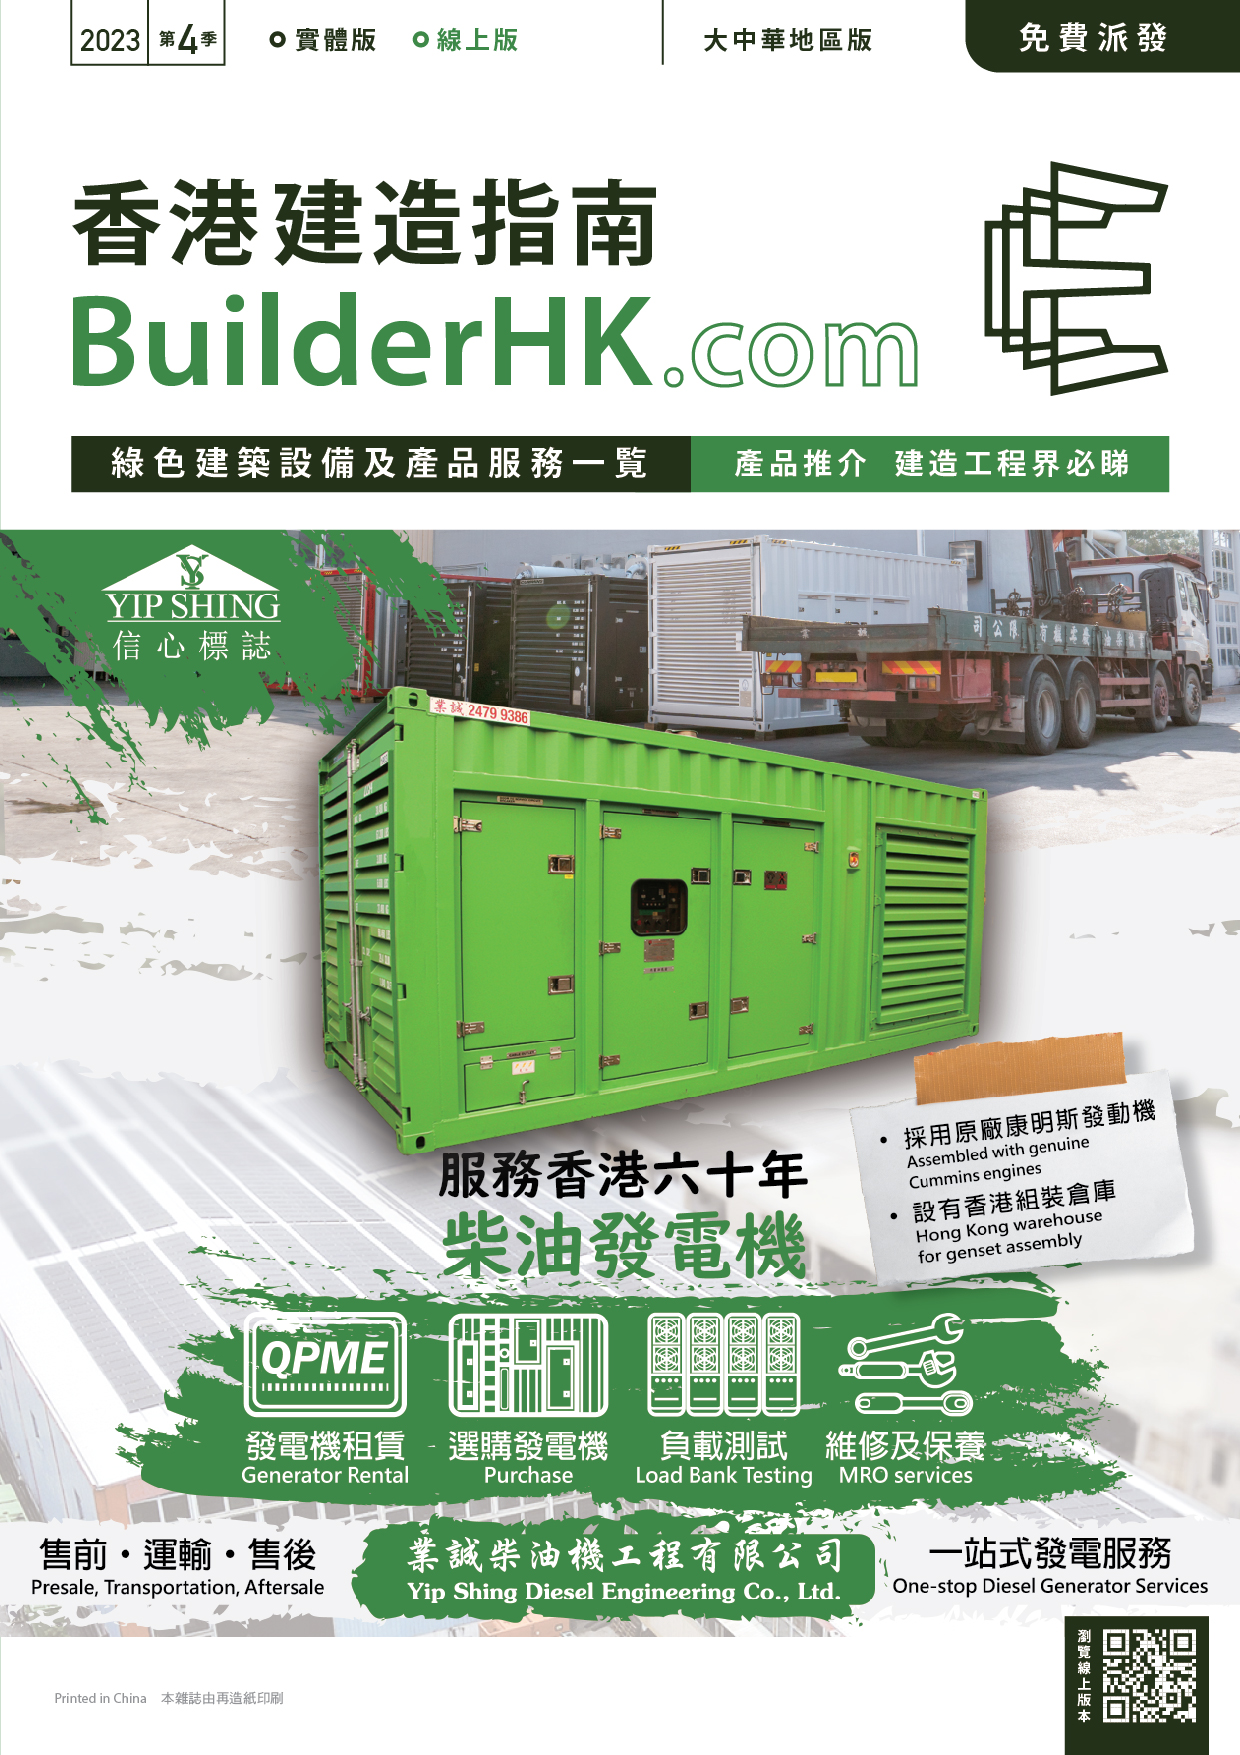 BuilderHK Booklet 2023 Q4